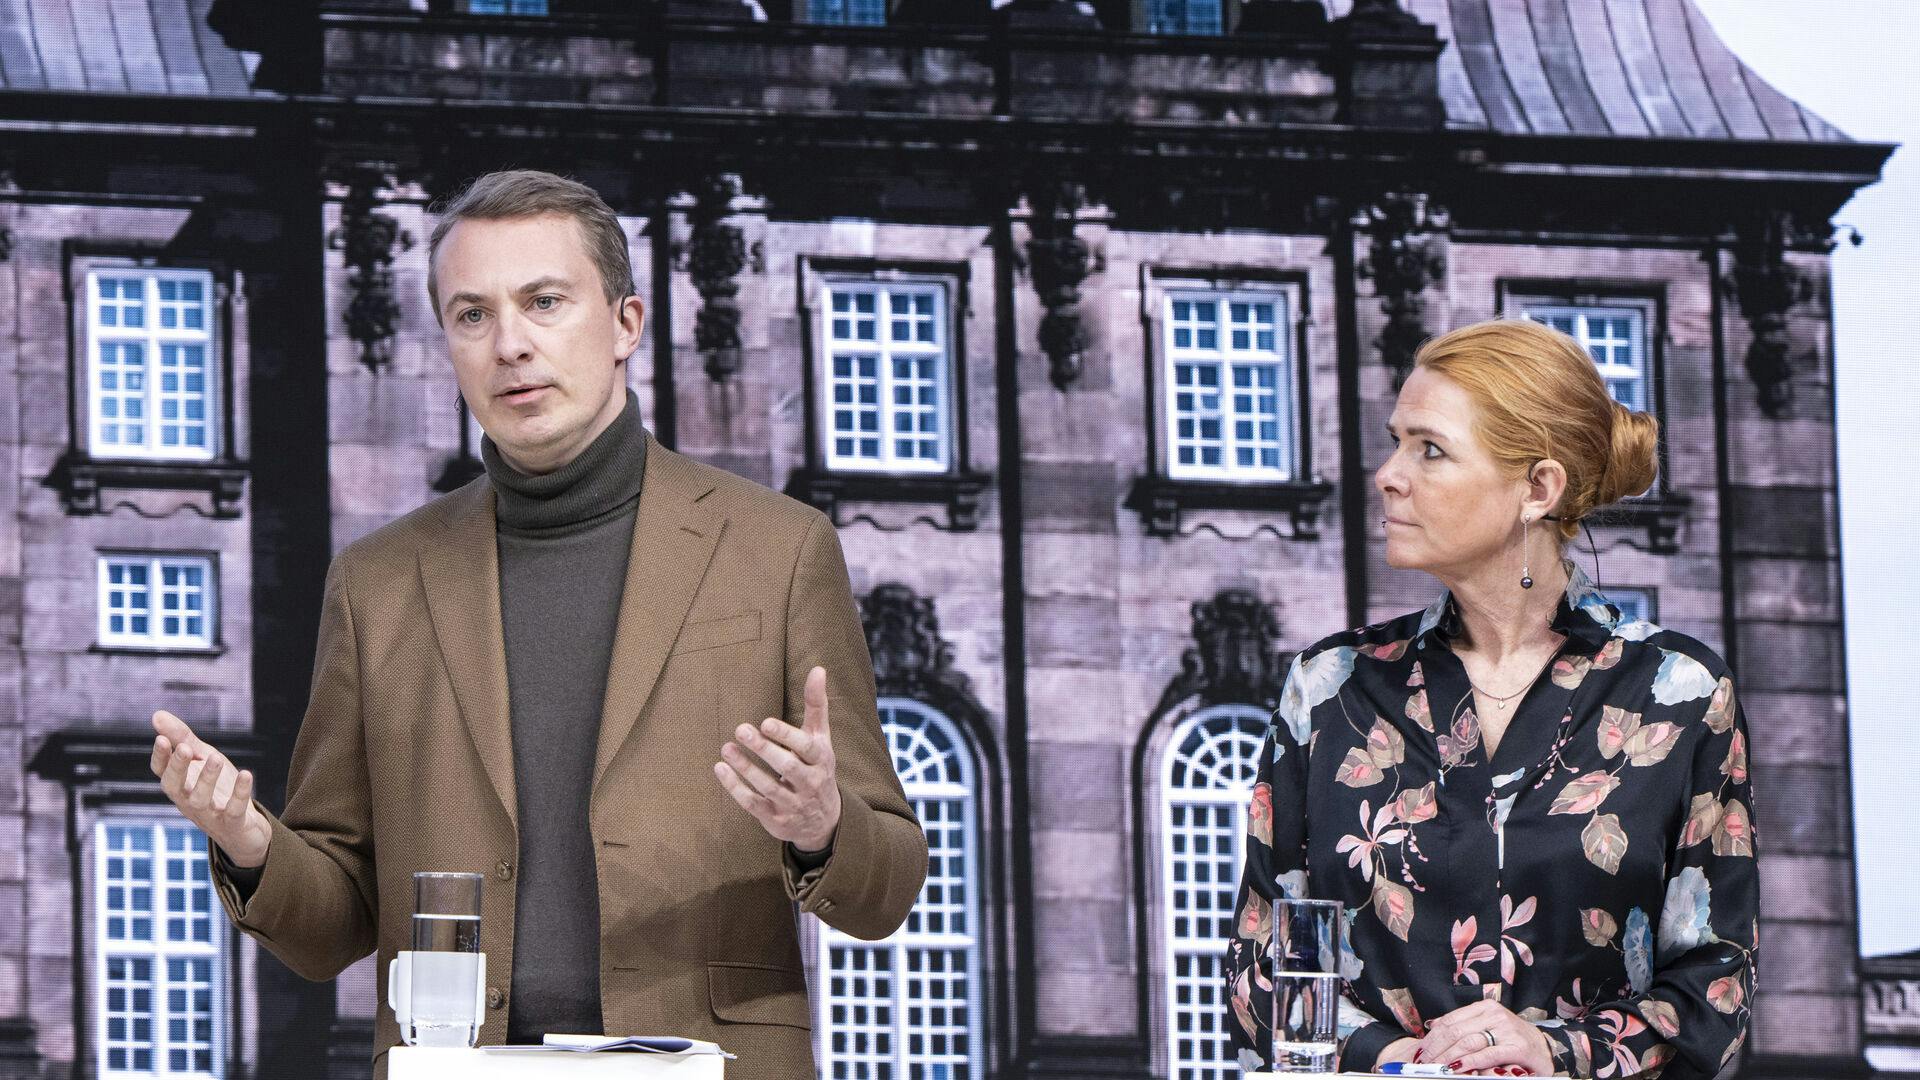 Formanden for Dansk Folkeparti, Morten Messerschmidt, er klar til at skære dybt i udviklingsbistanden til fordel for danske formål.